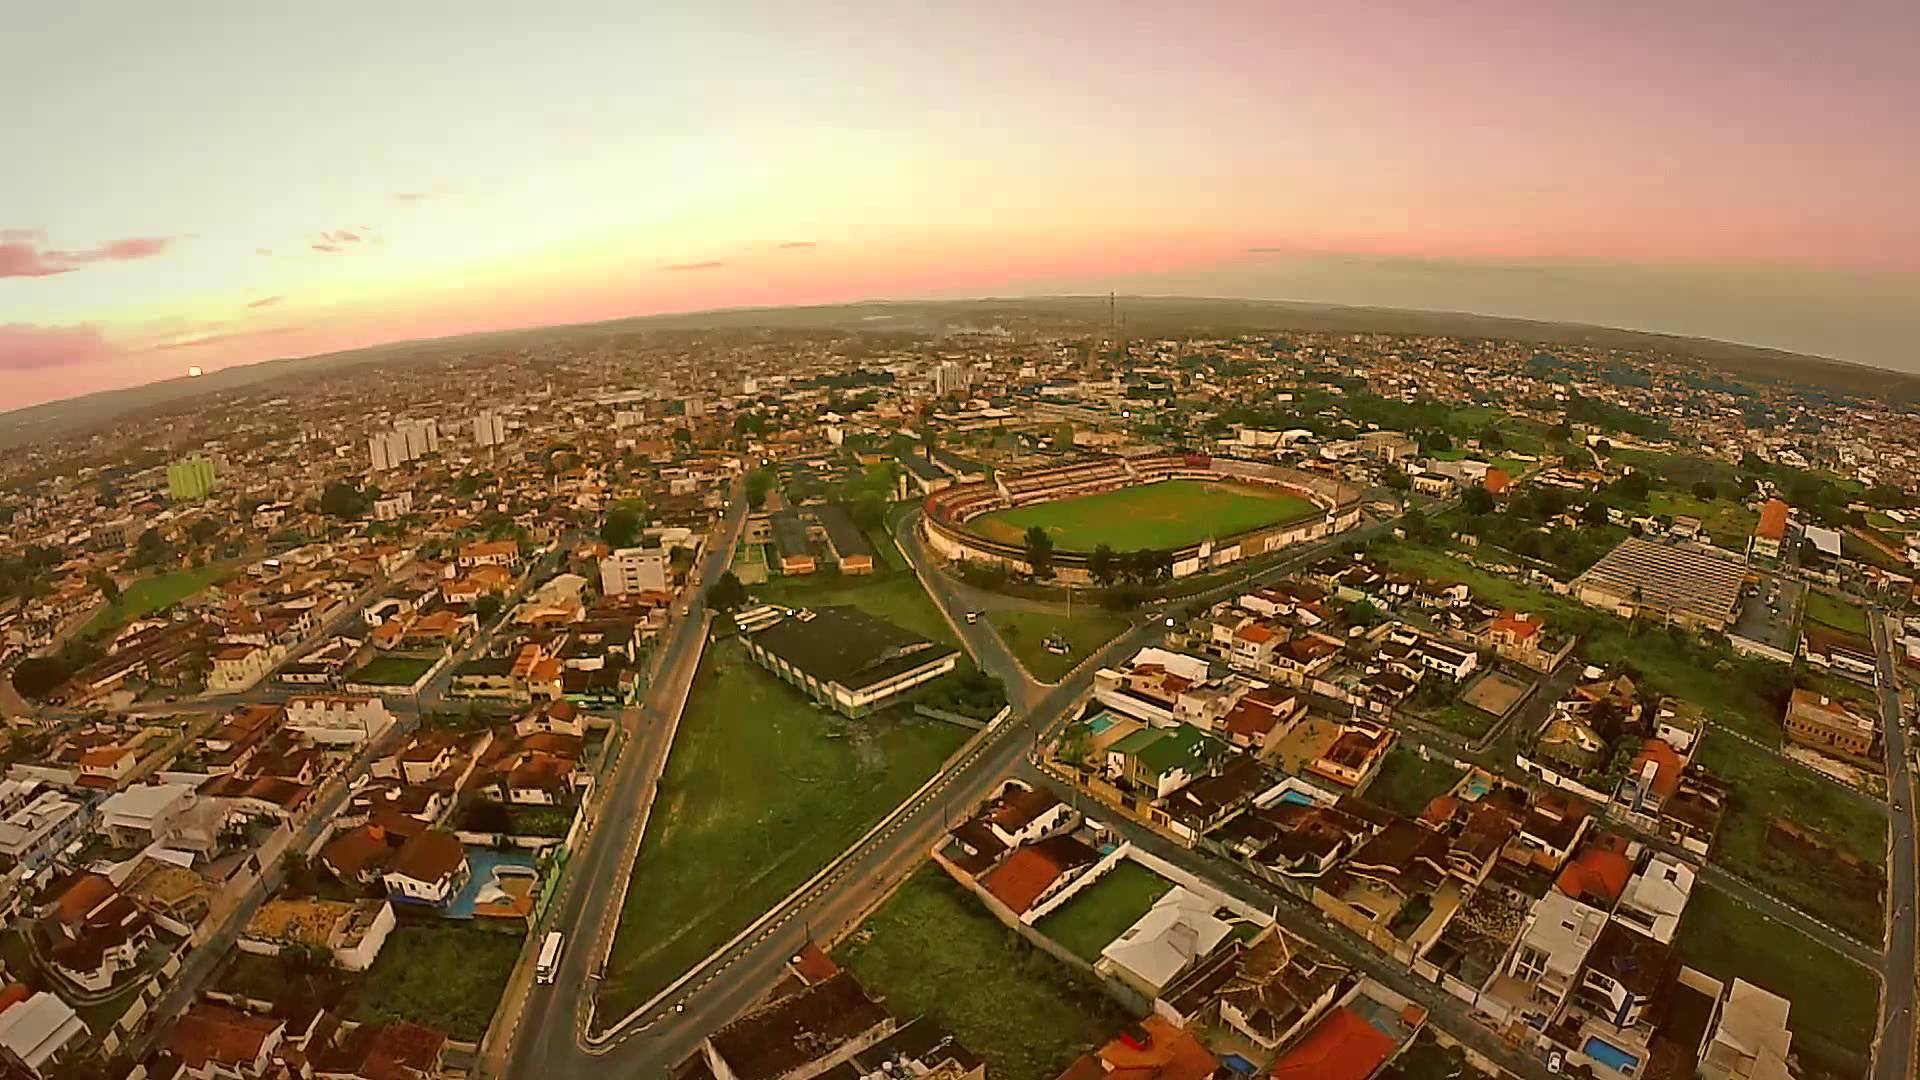 City of Alagoinhas